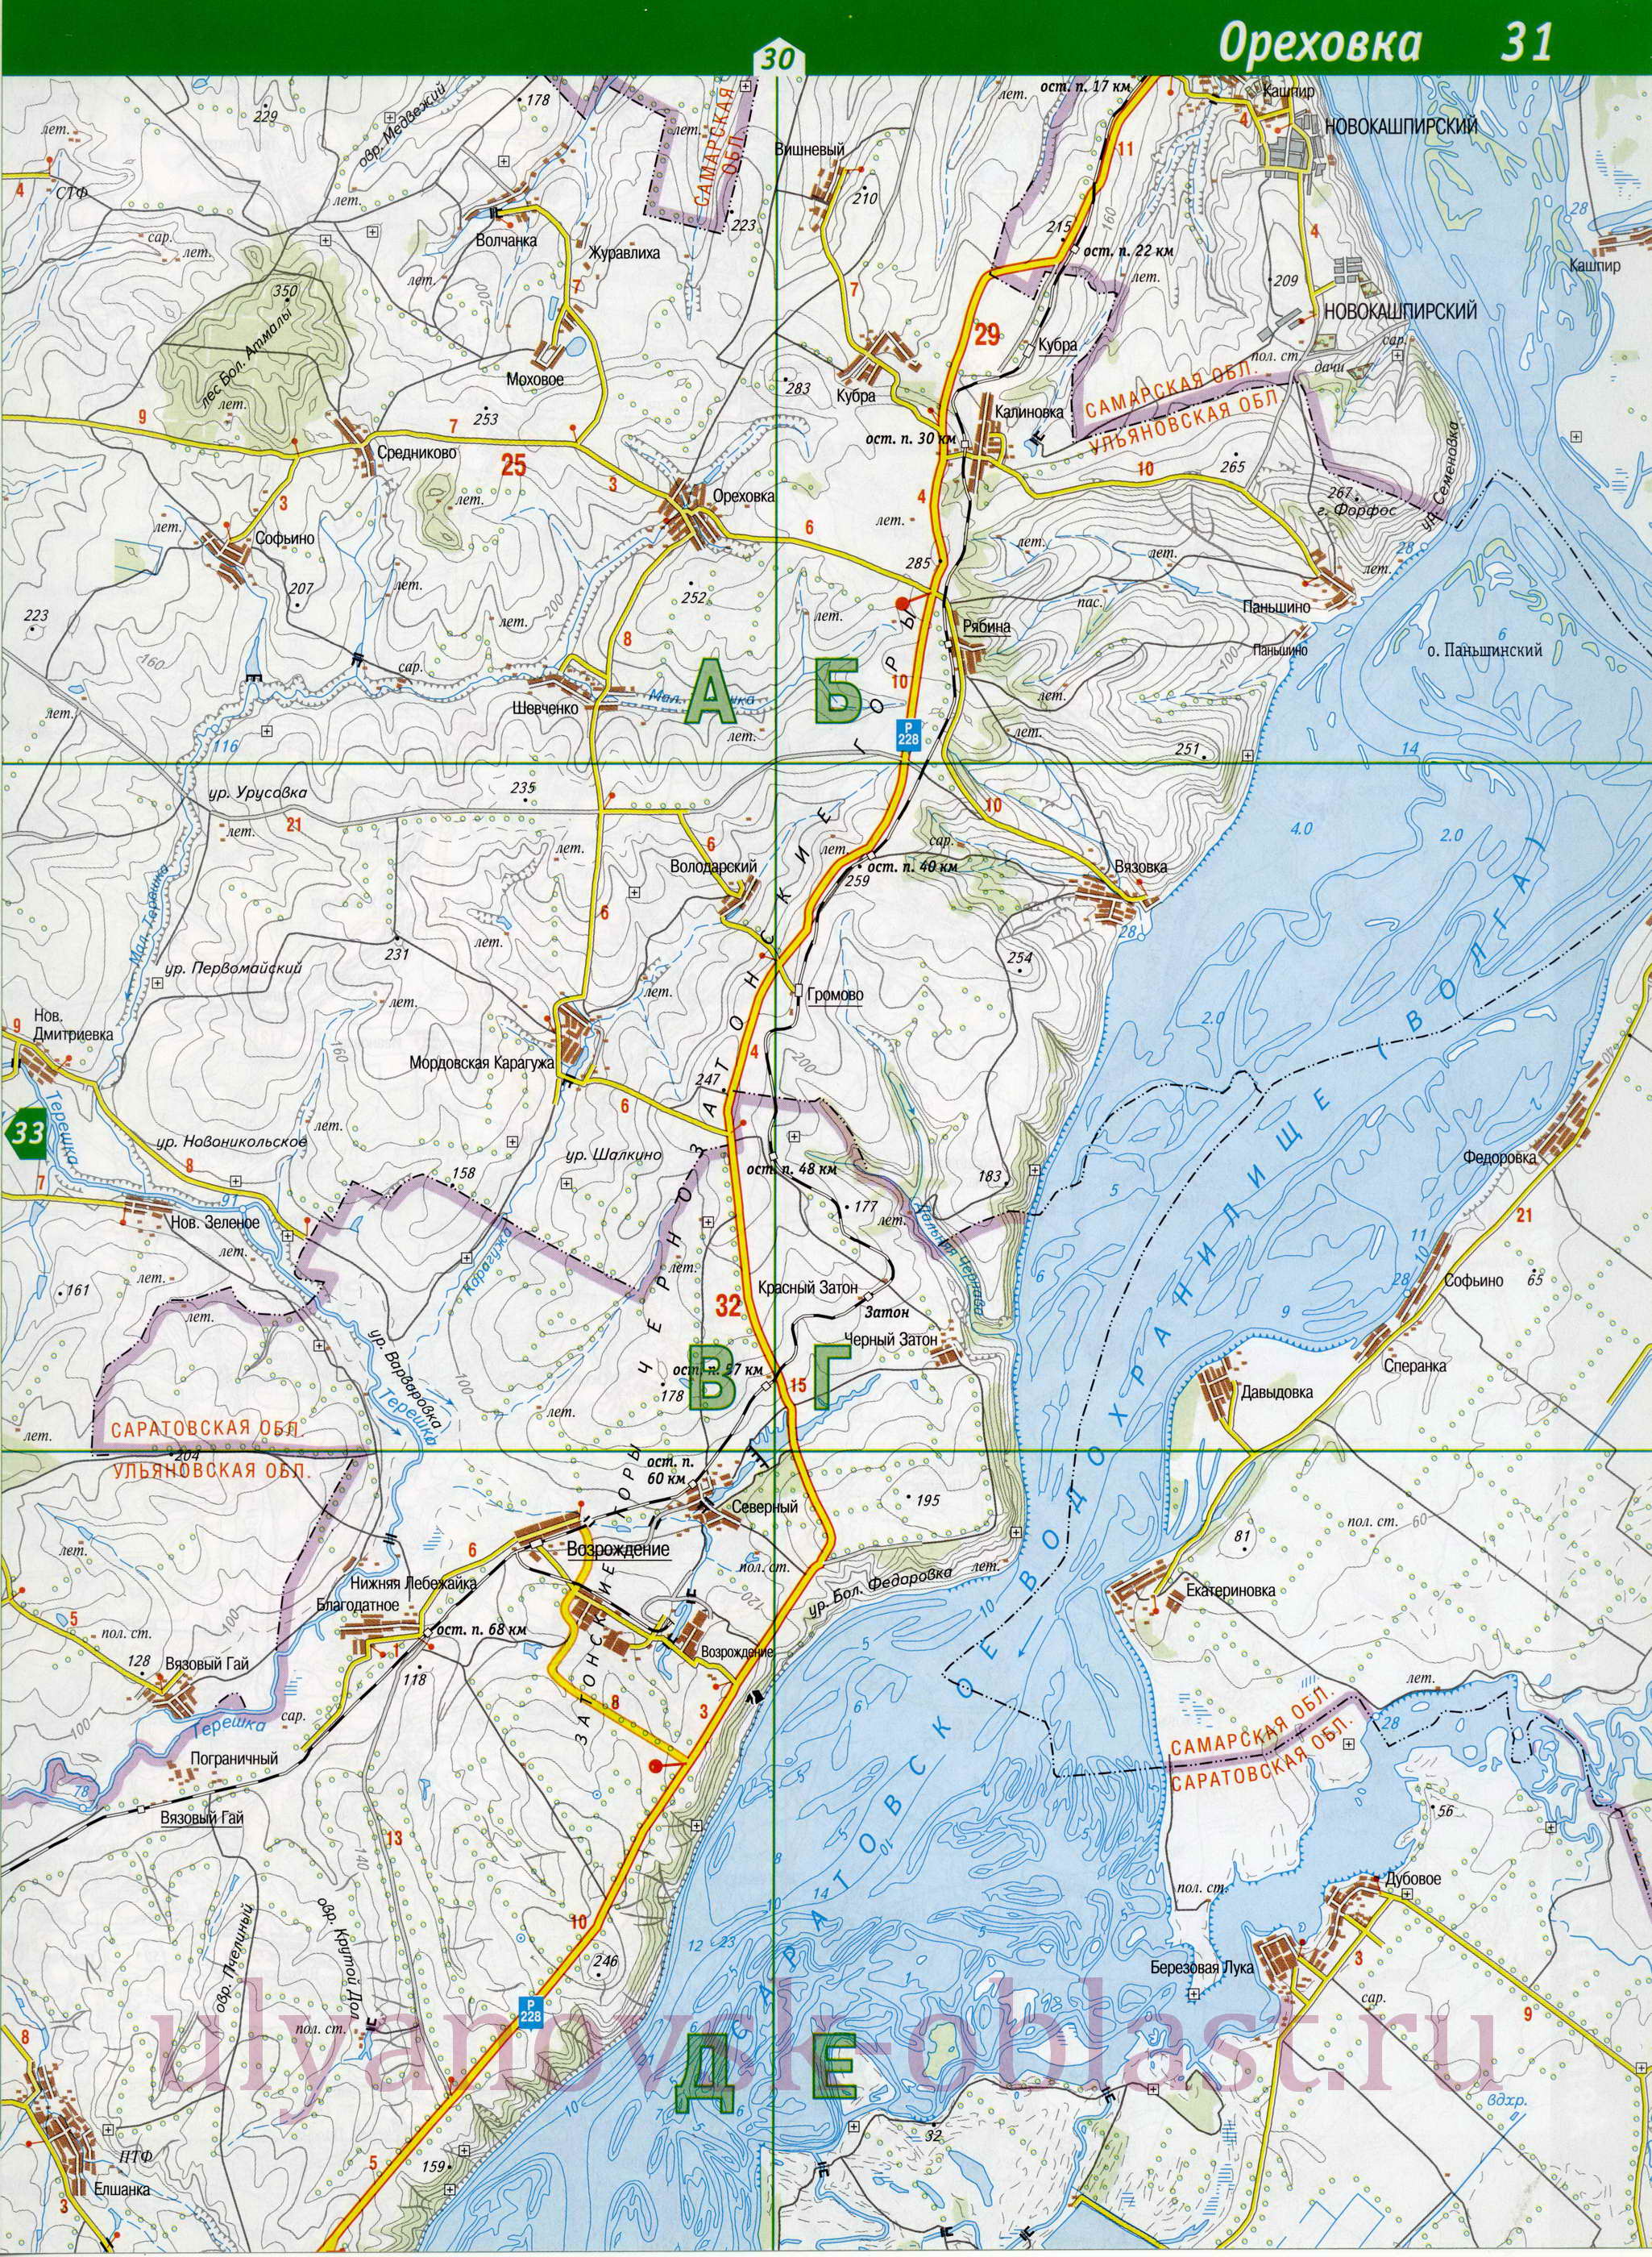 Карта Старокулаткинского района Ульяновской области. Подробная карта дорог - Старокурлаткинский район, B0 - 